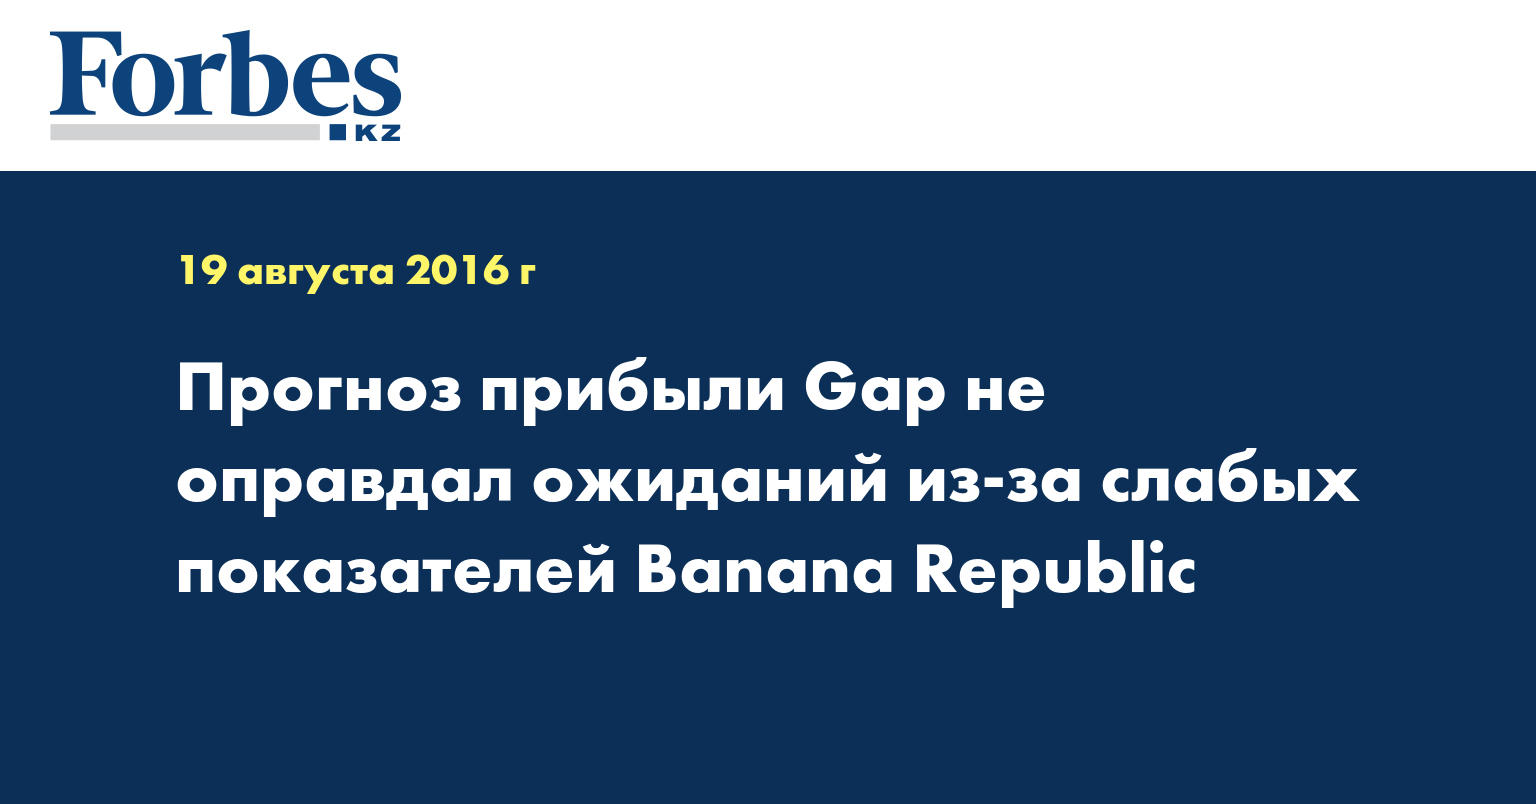 Прогноз прибыли Gap не оправдал ожиданий из-за слабых показателей Banana Republic